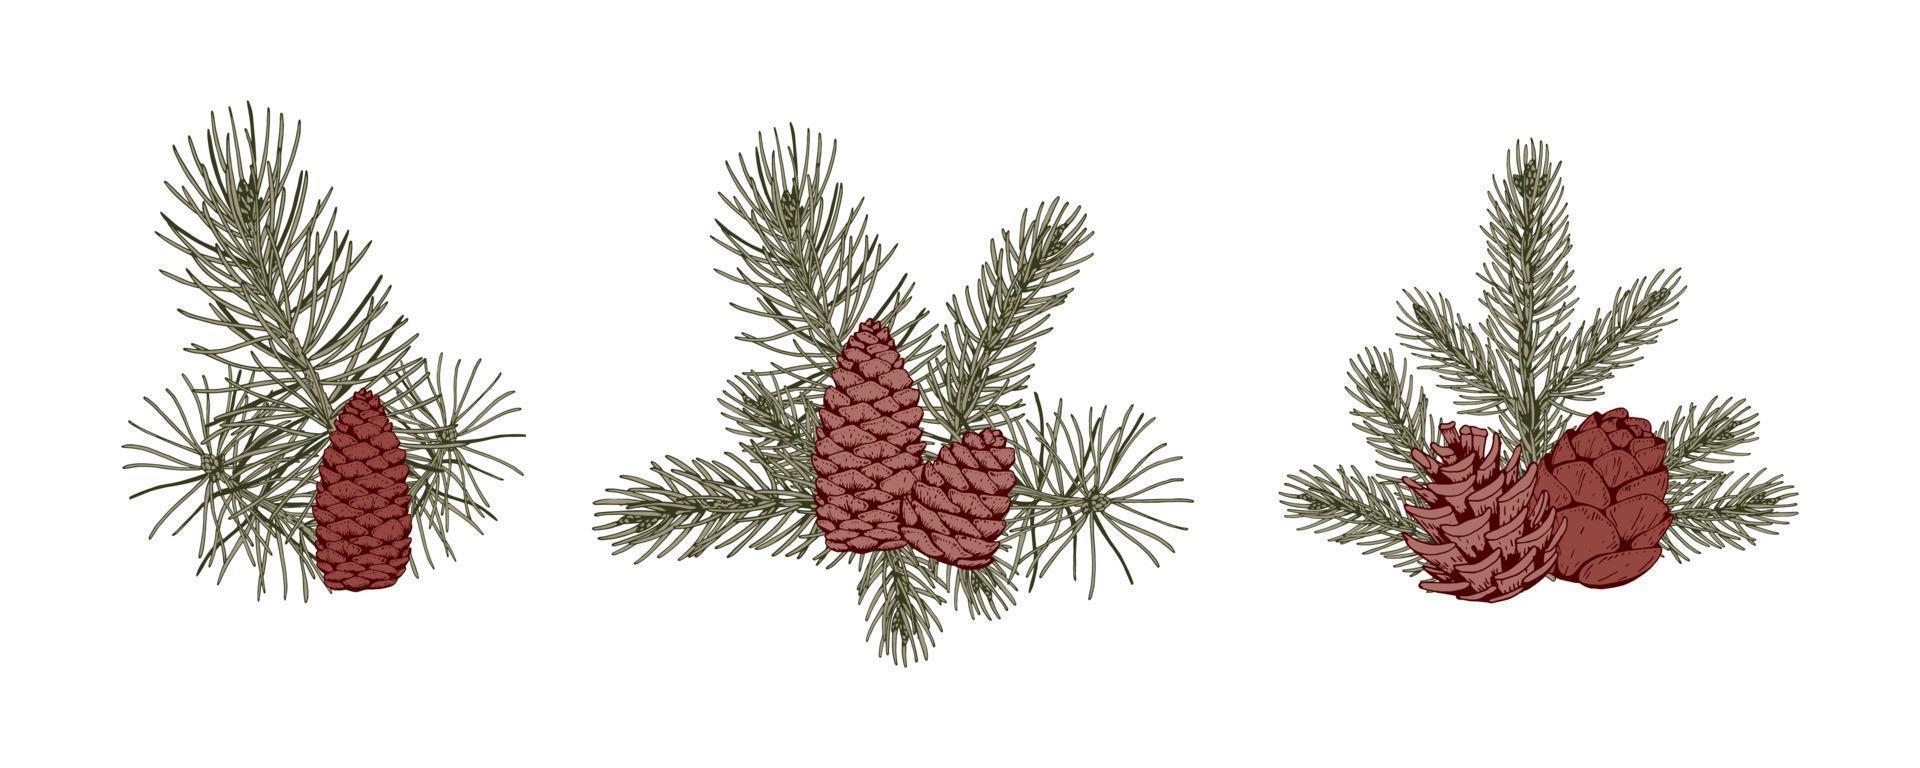 satz weihnachtlicher botanikkompositionen mit tannenzweigen und kegeln. vektorillustration im skizzenstil lokalisiert auf weißem hintergrund vektor